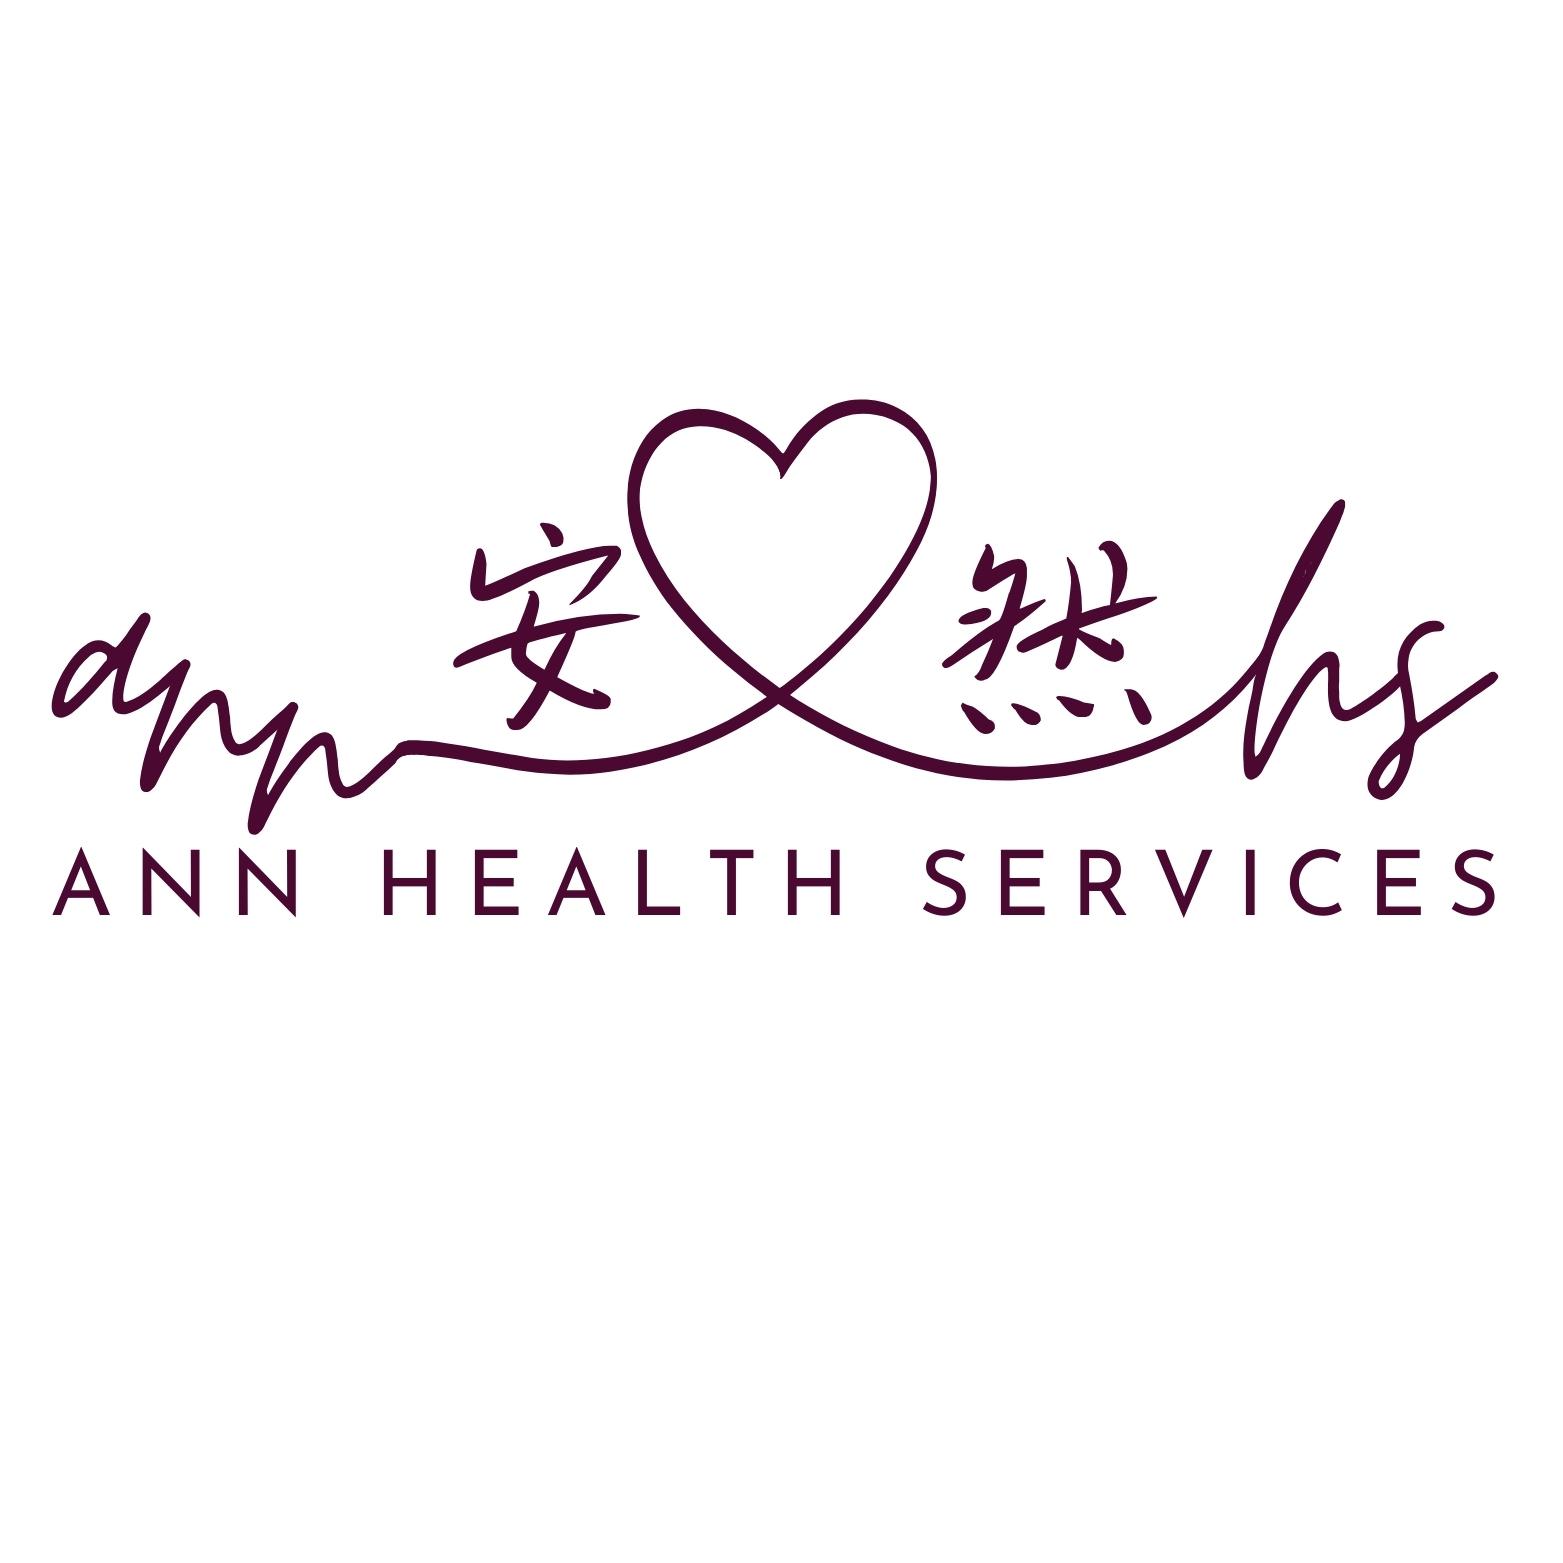 ANN HEALTH SERVICES